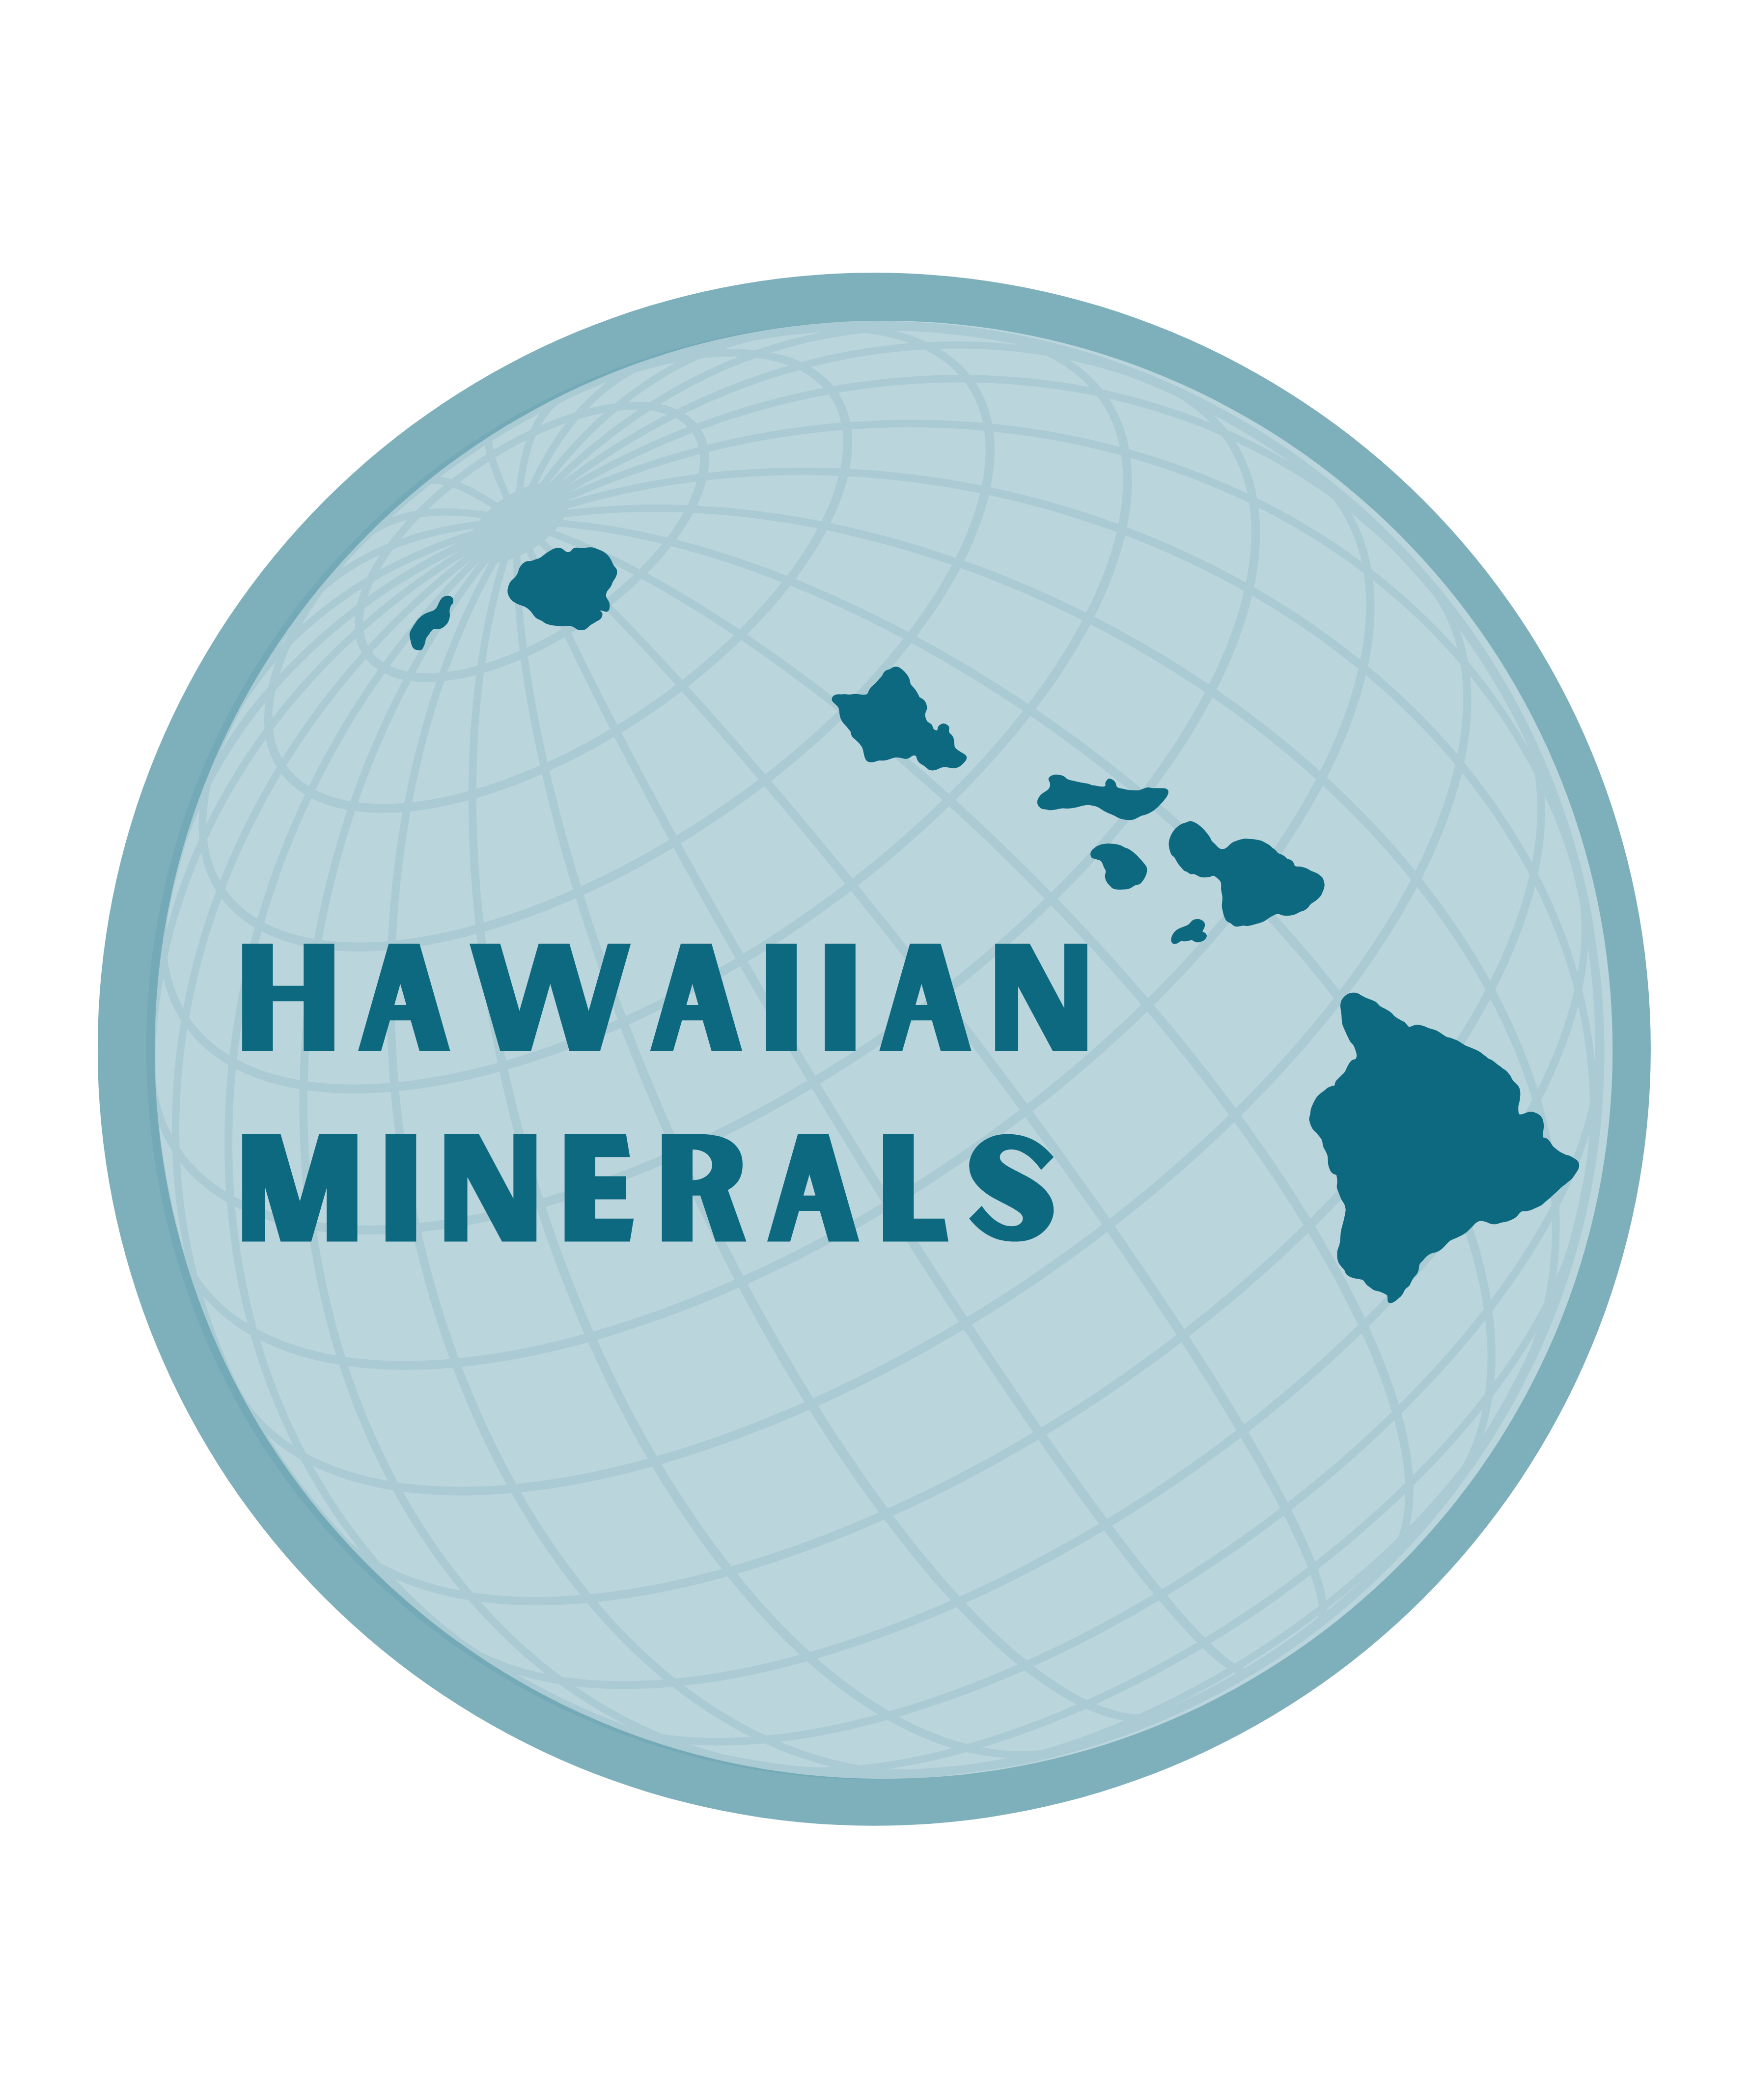 Hawaiian Minerals